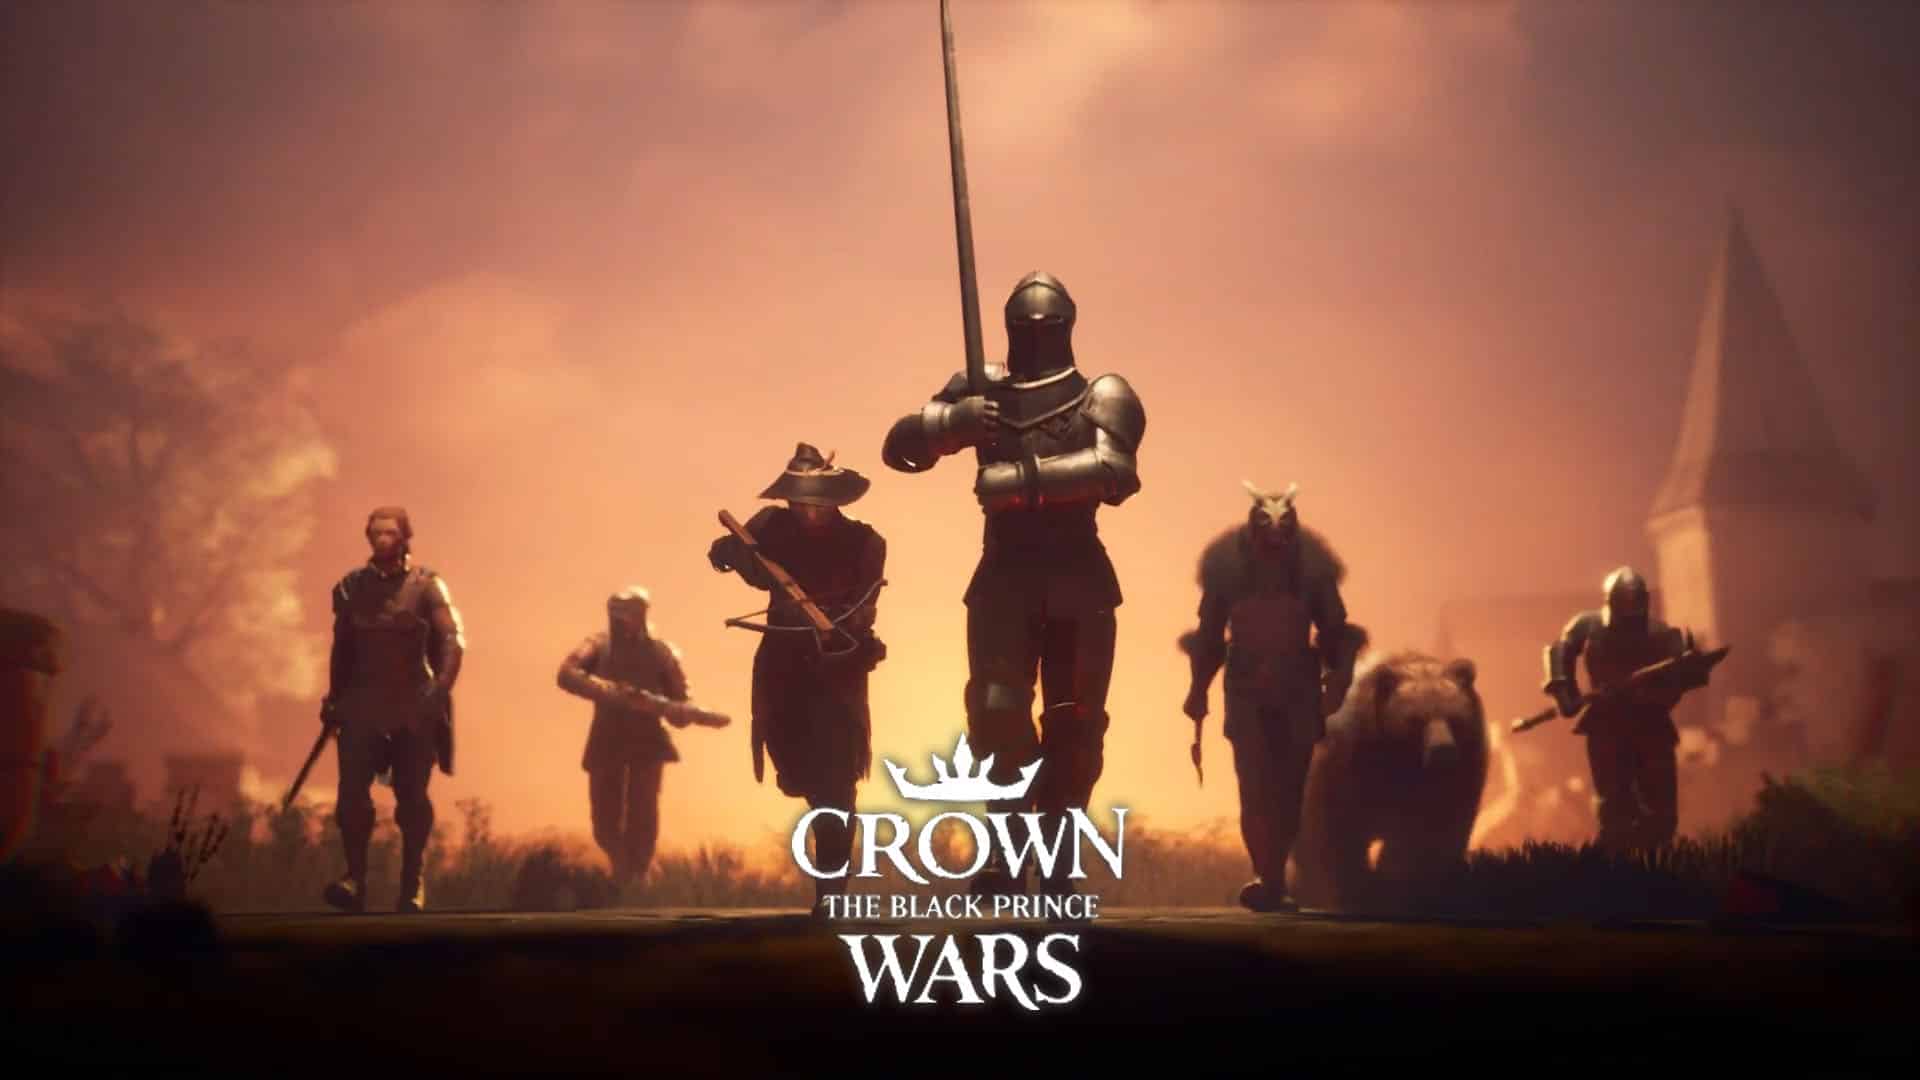 Crown Wars